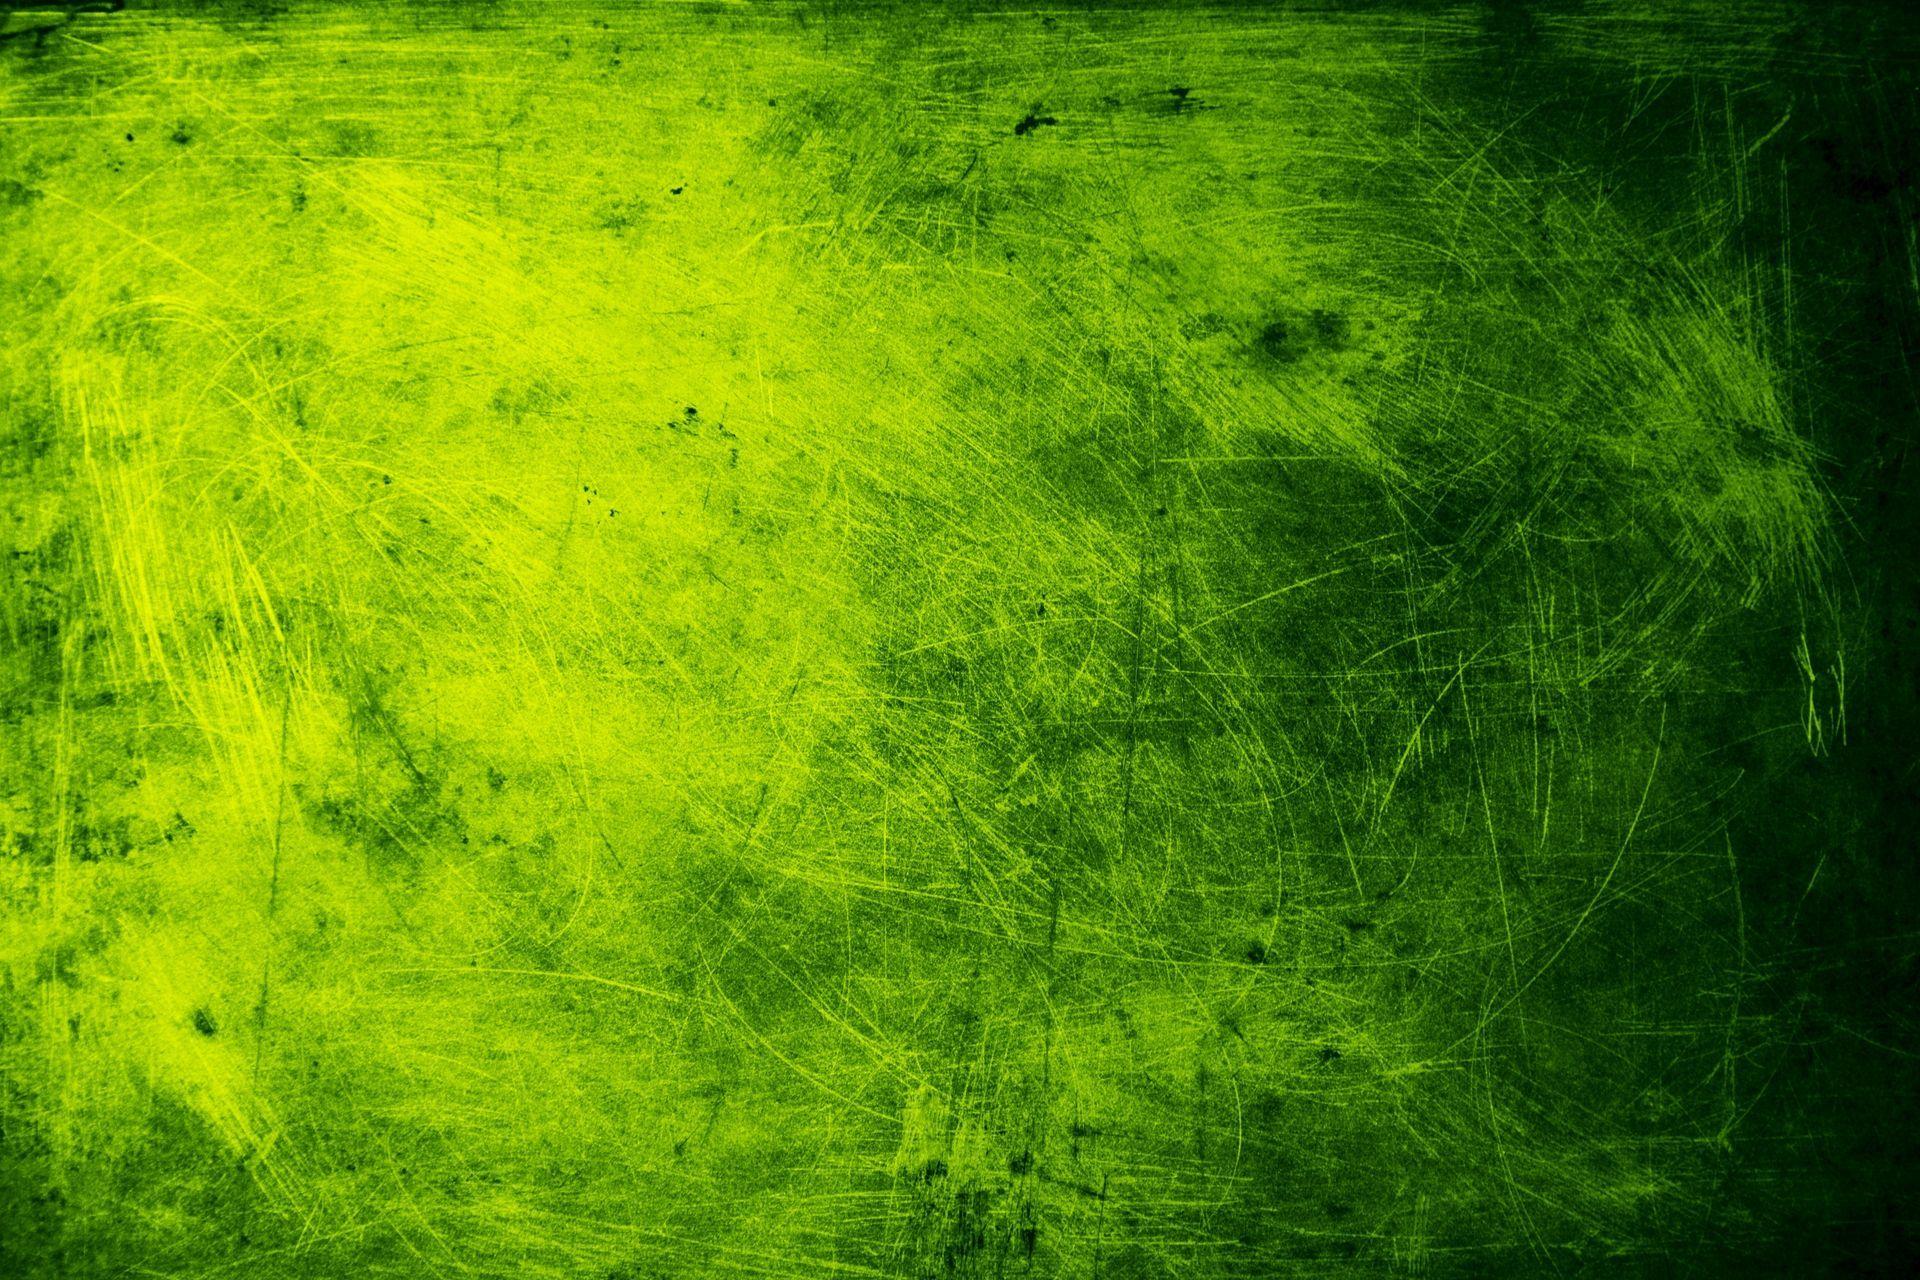 Nếu bạn yêu thích phong cách Grunge thì hình nền màu xanh lá cây grunge đẹp nhất này chắc chắn sẽ khiến bạn hài lòng. Hình ảnh này kết hợp một cách tuyệt vời giữa màu sắc đen, xám và màu xanh lá cây, tạo nên một không gian độc đáo và đầy phóng khoáng cho desktop của bạn.